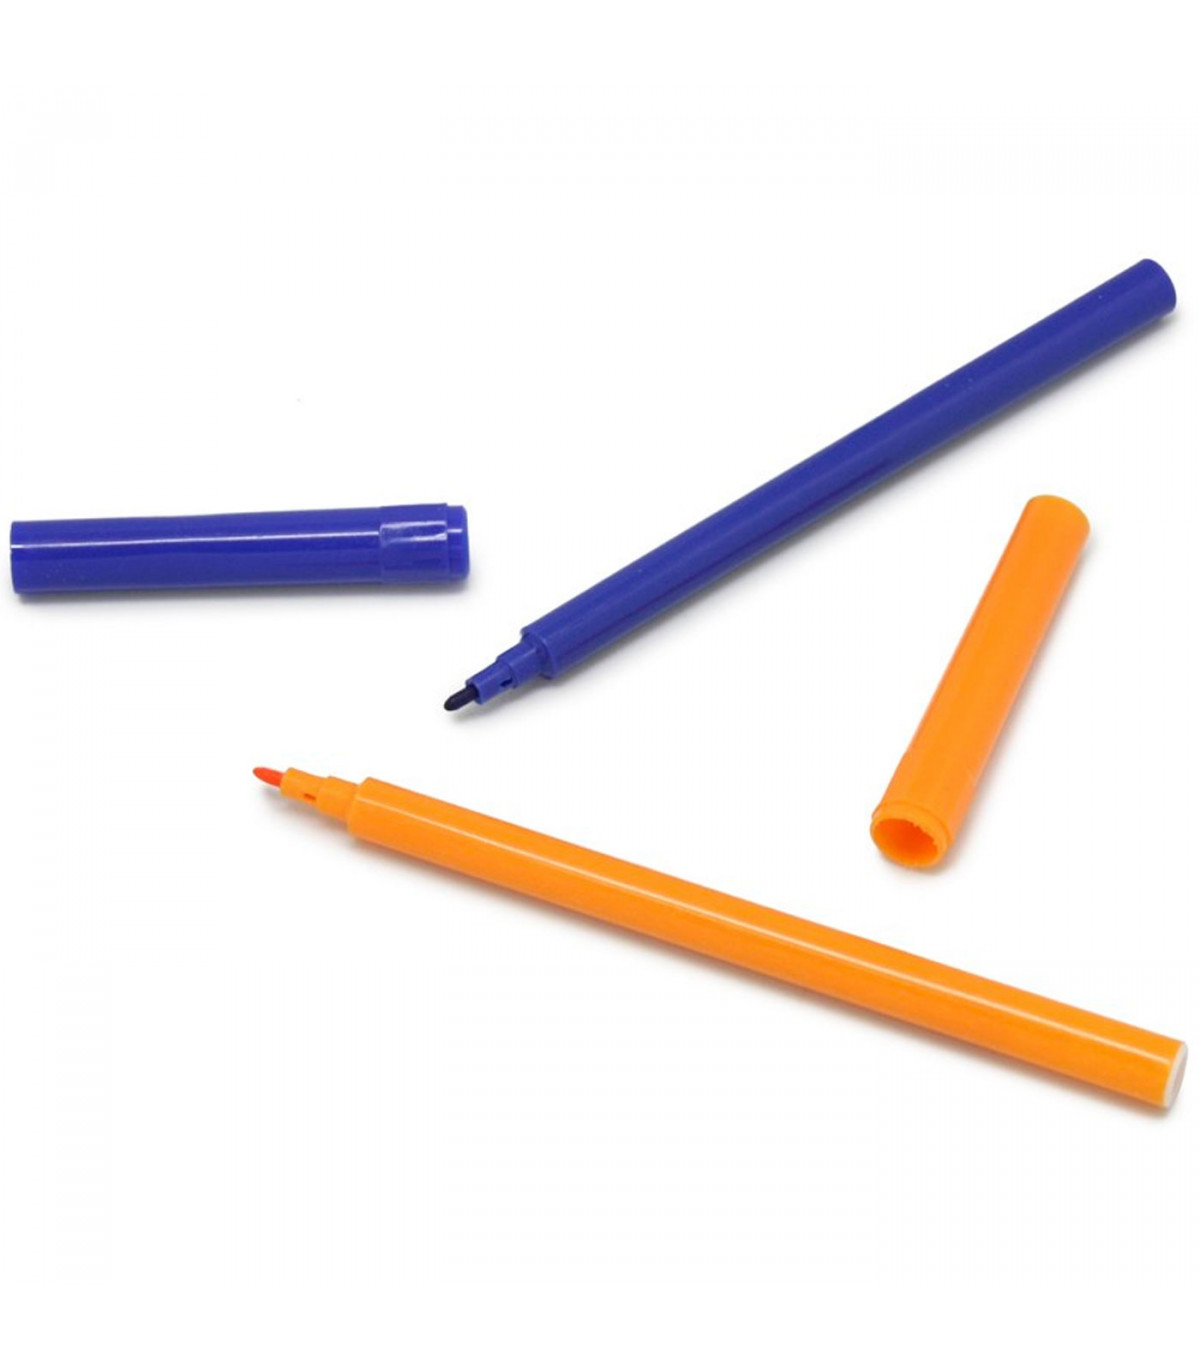 Caja de lápices de plástico  Personaliza tu aprendizaje